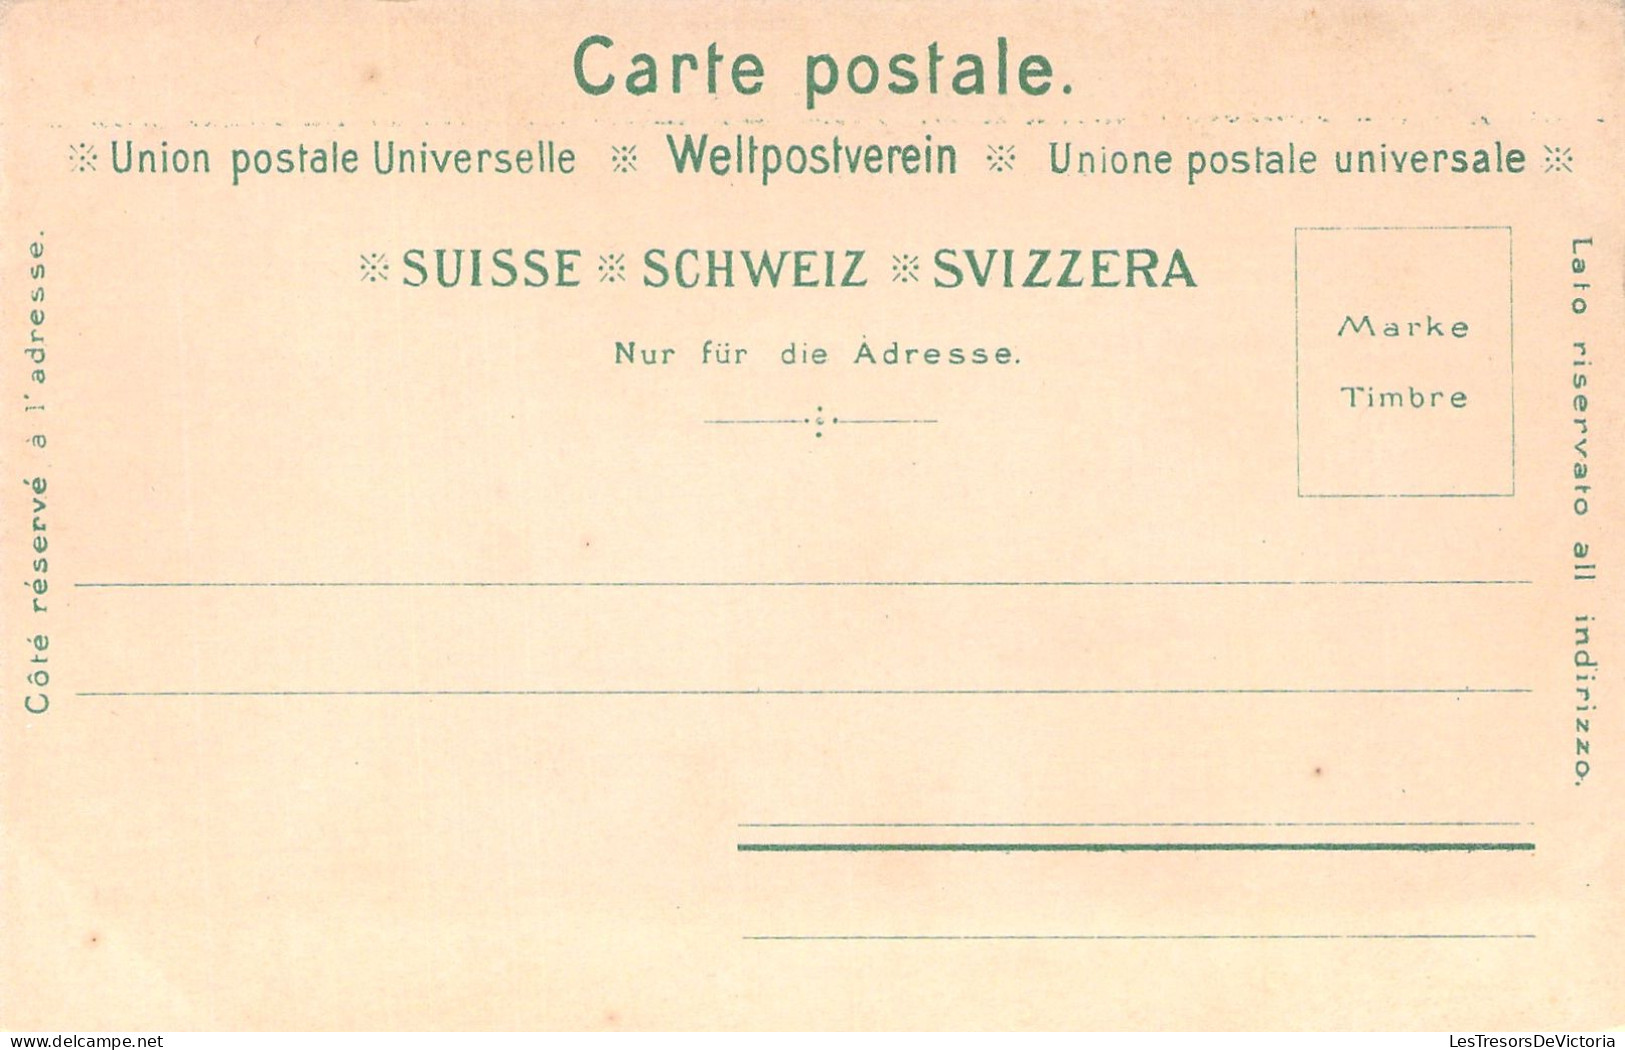 SUISSE - Appenzeller Landsgemeinde Im Jahre 1833 - Carte Postale Ancienne - Appenzell